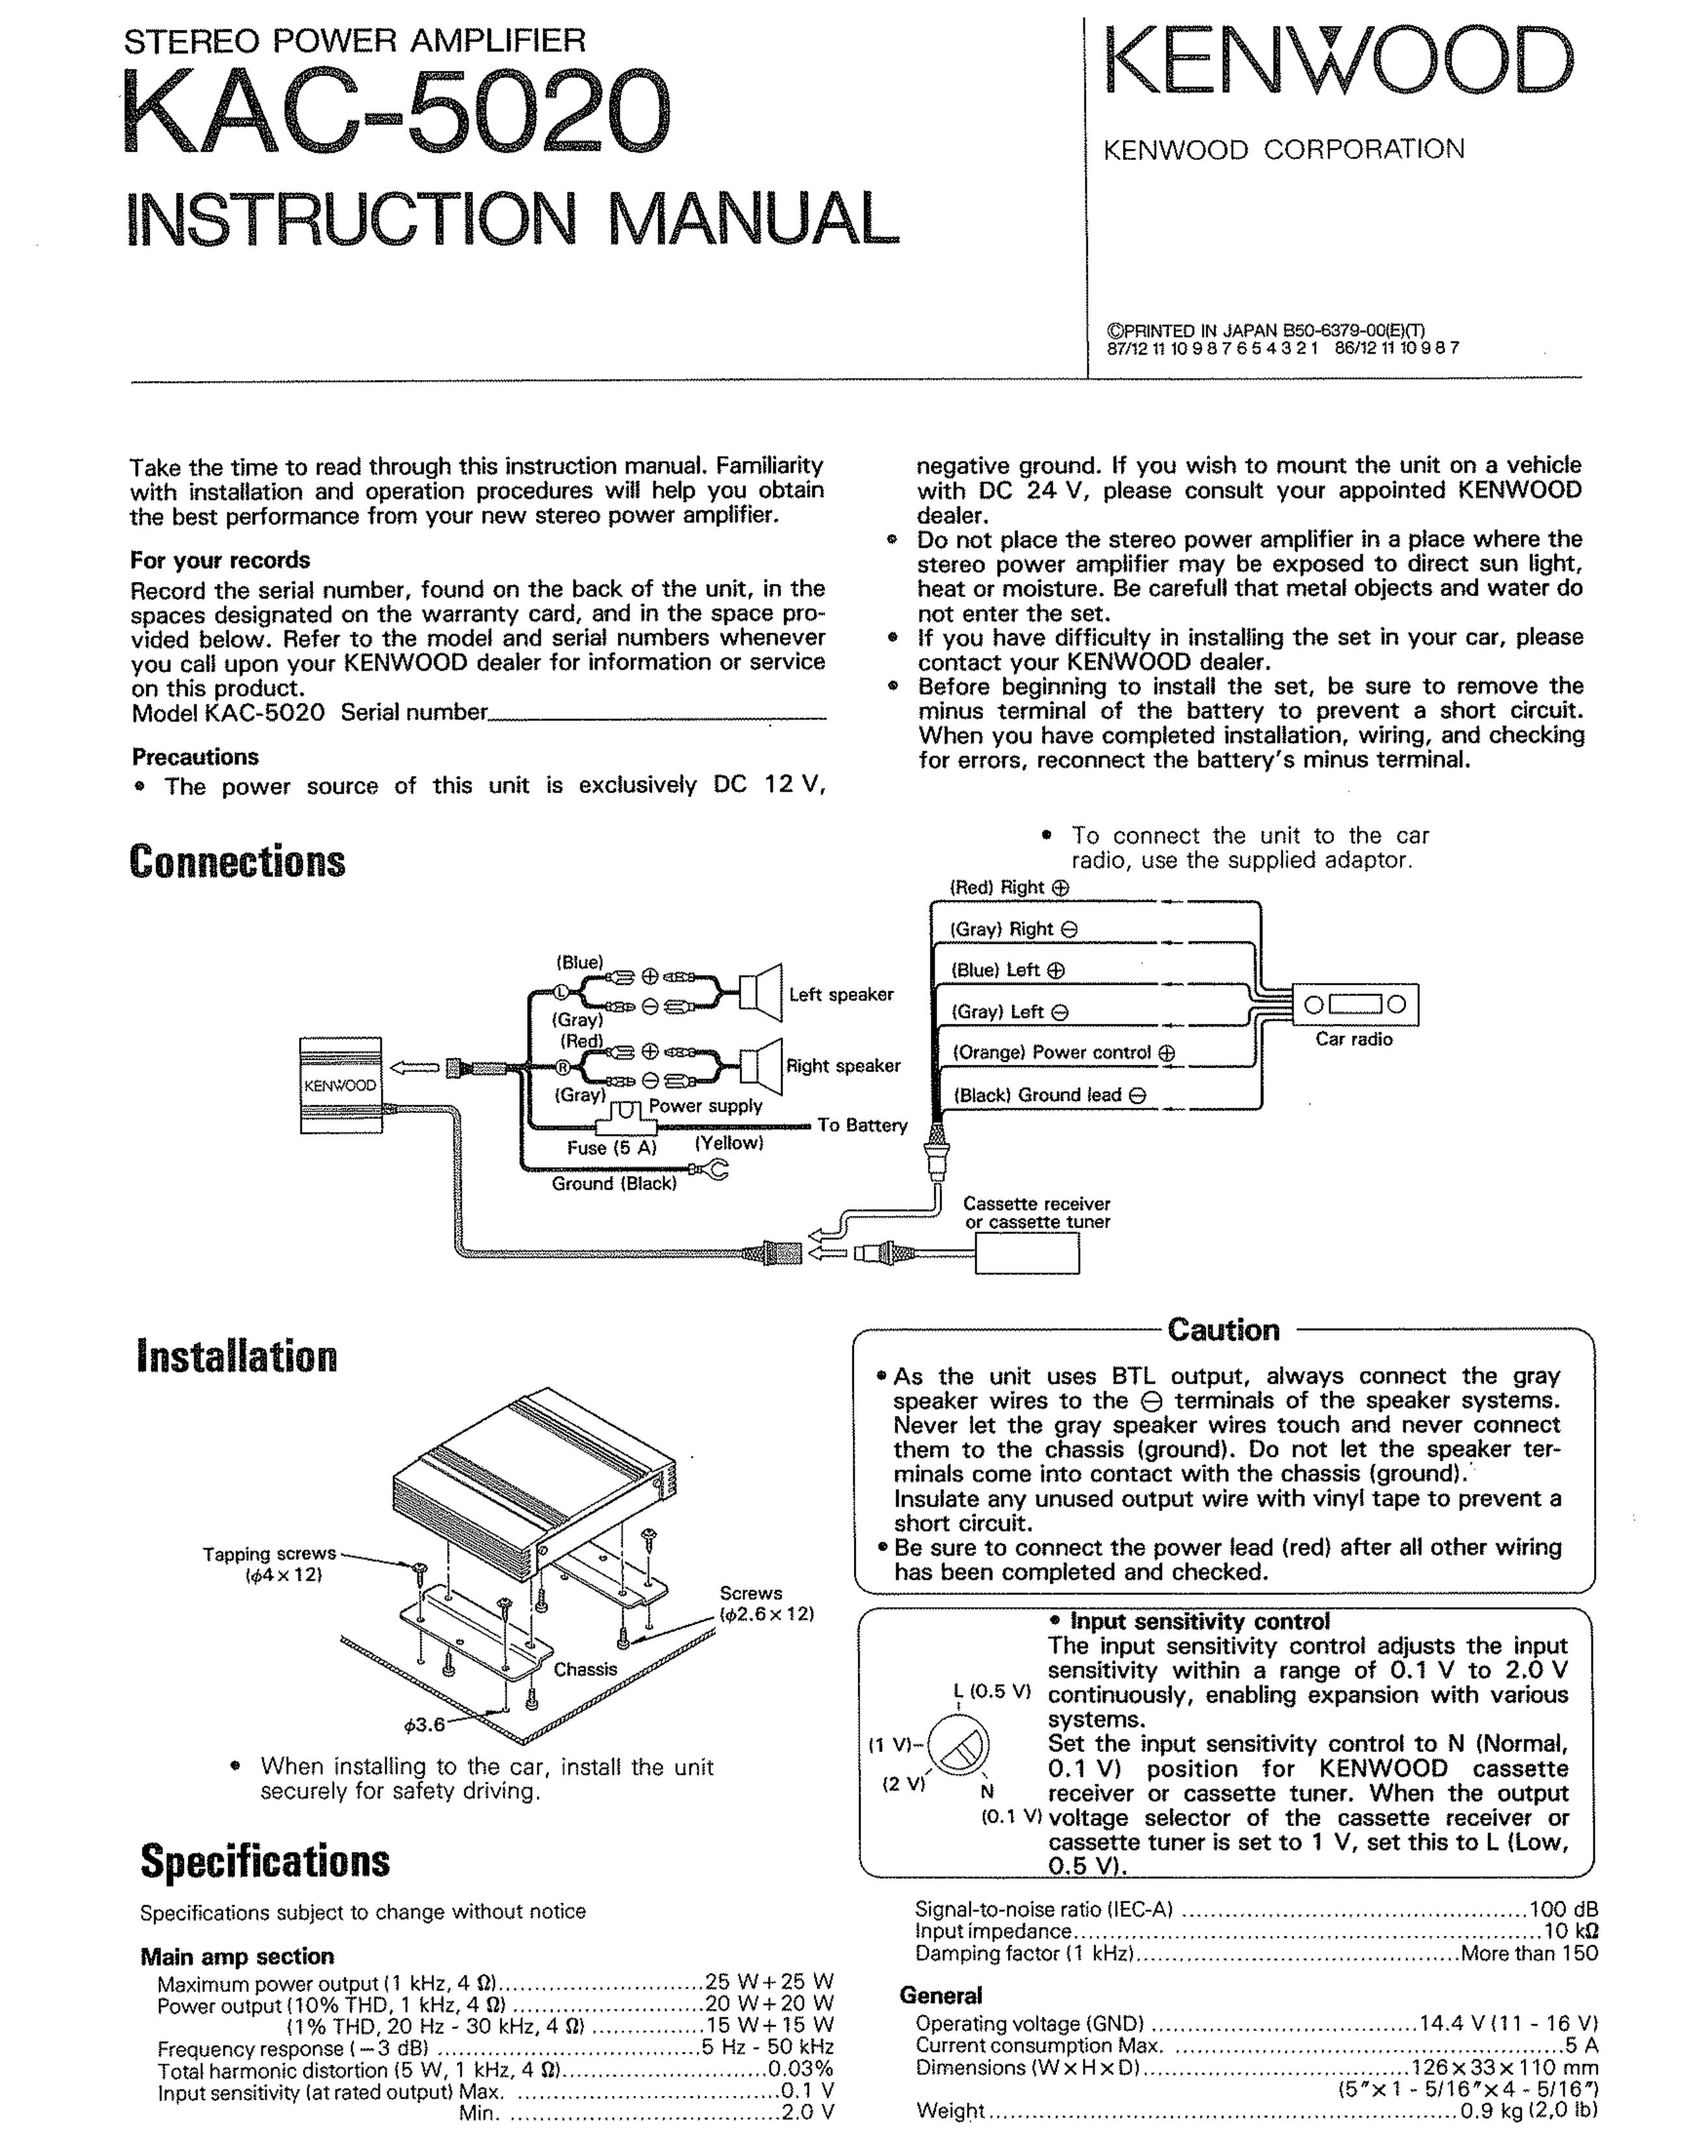 Kenwood KAC-5020 Stereo Amplifier User Manual